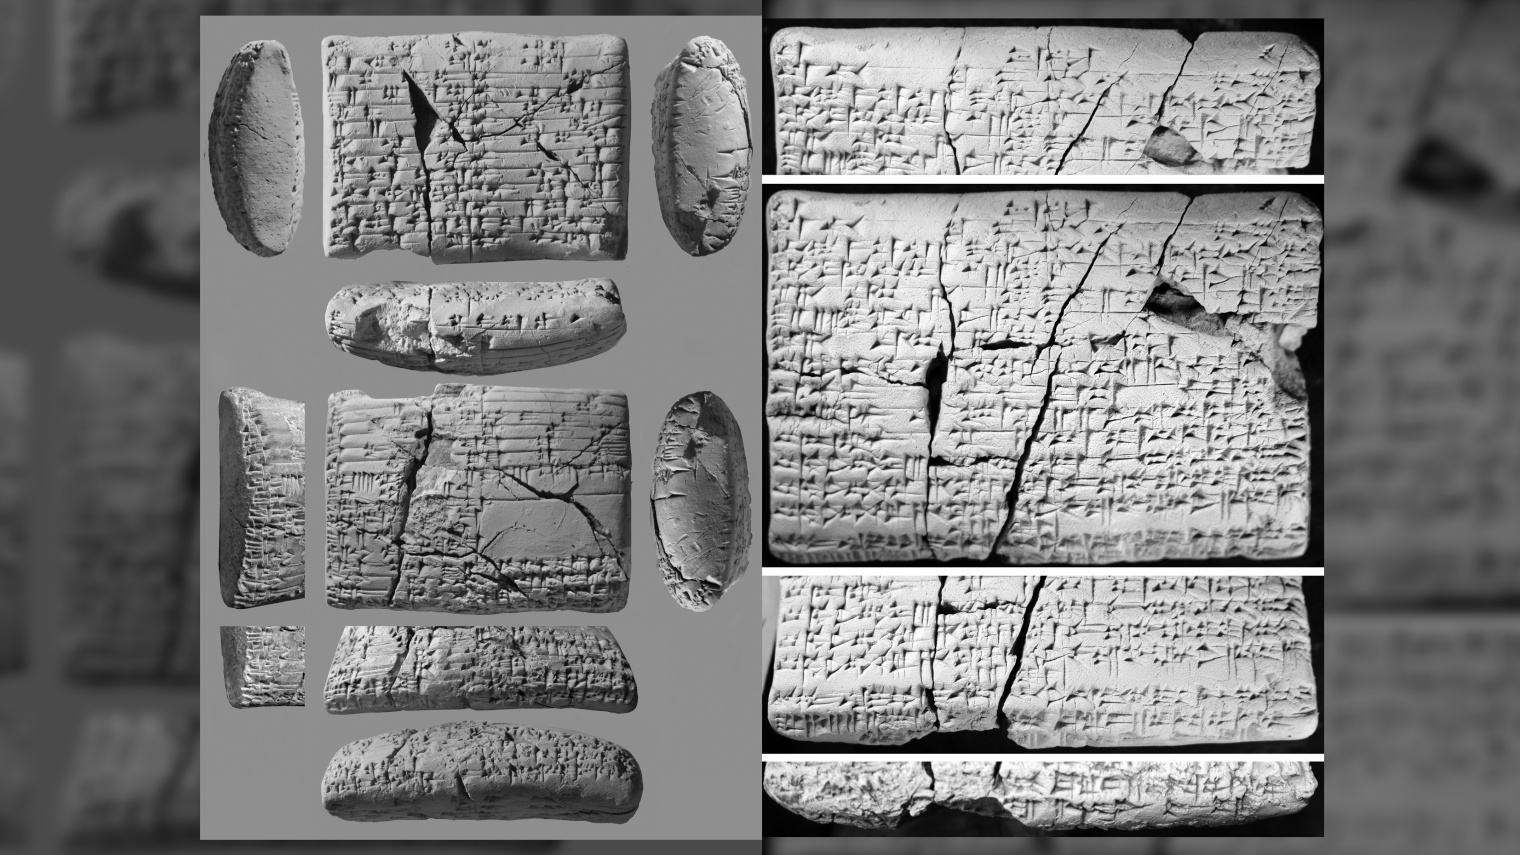 Таблички возрастом 4,000 лет содержат переводы на «утерянный» язык, в том числе песню о любви.